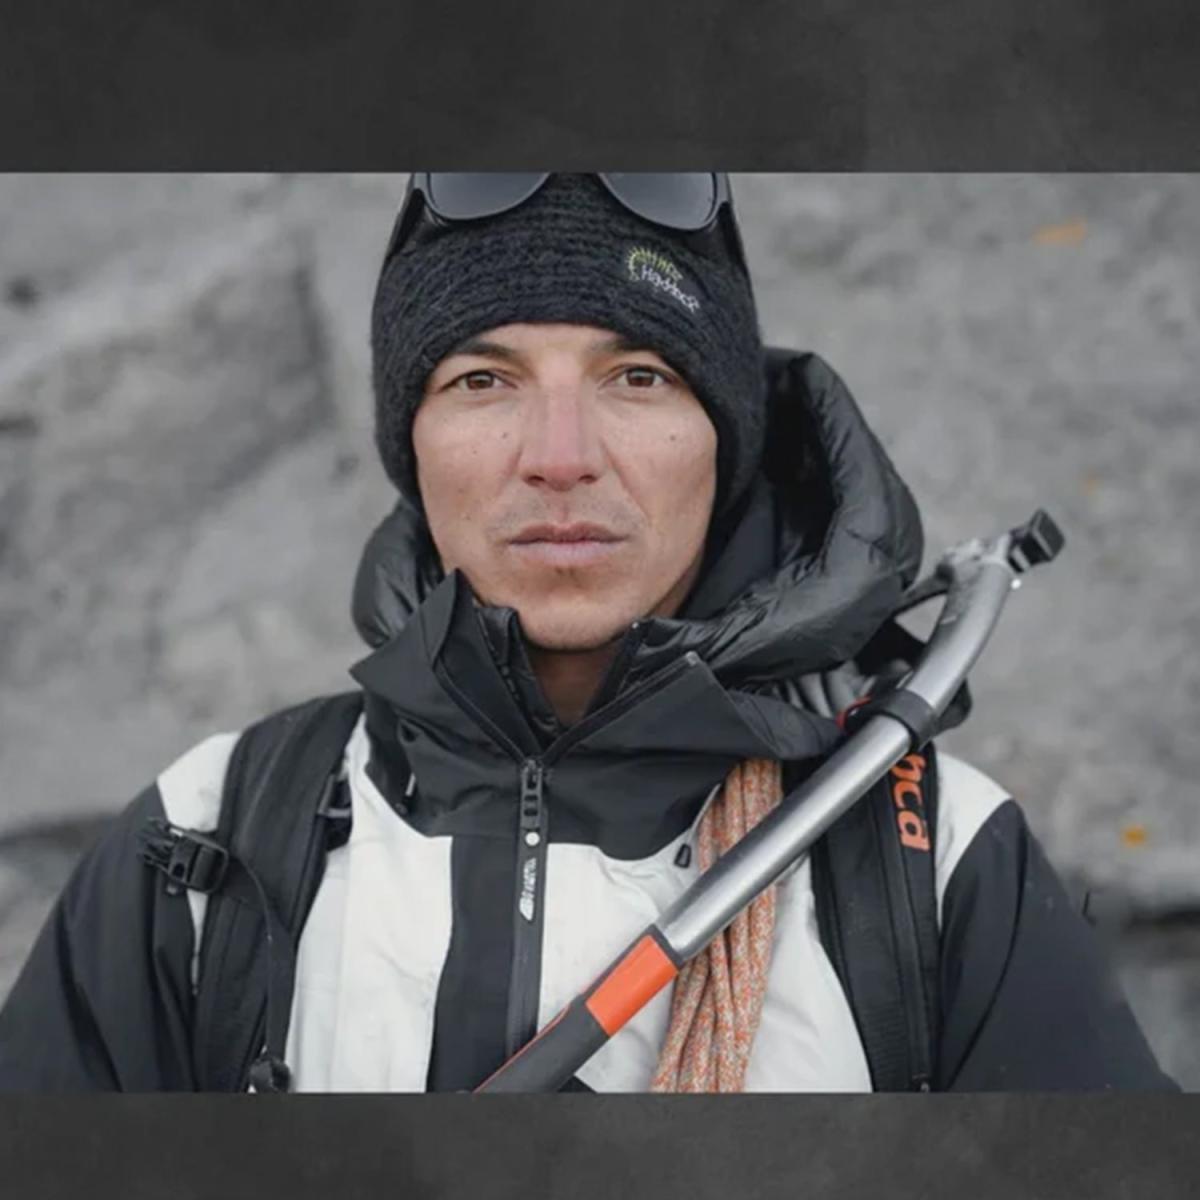 El legendario freeskier Toph Henry muere mientras esquiaba en Chile